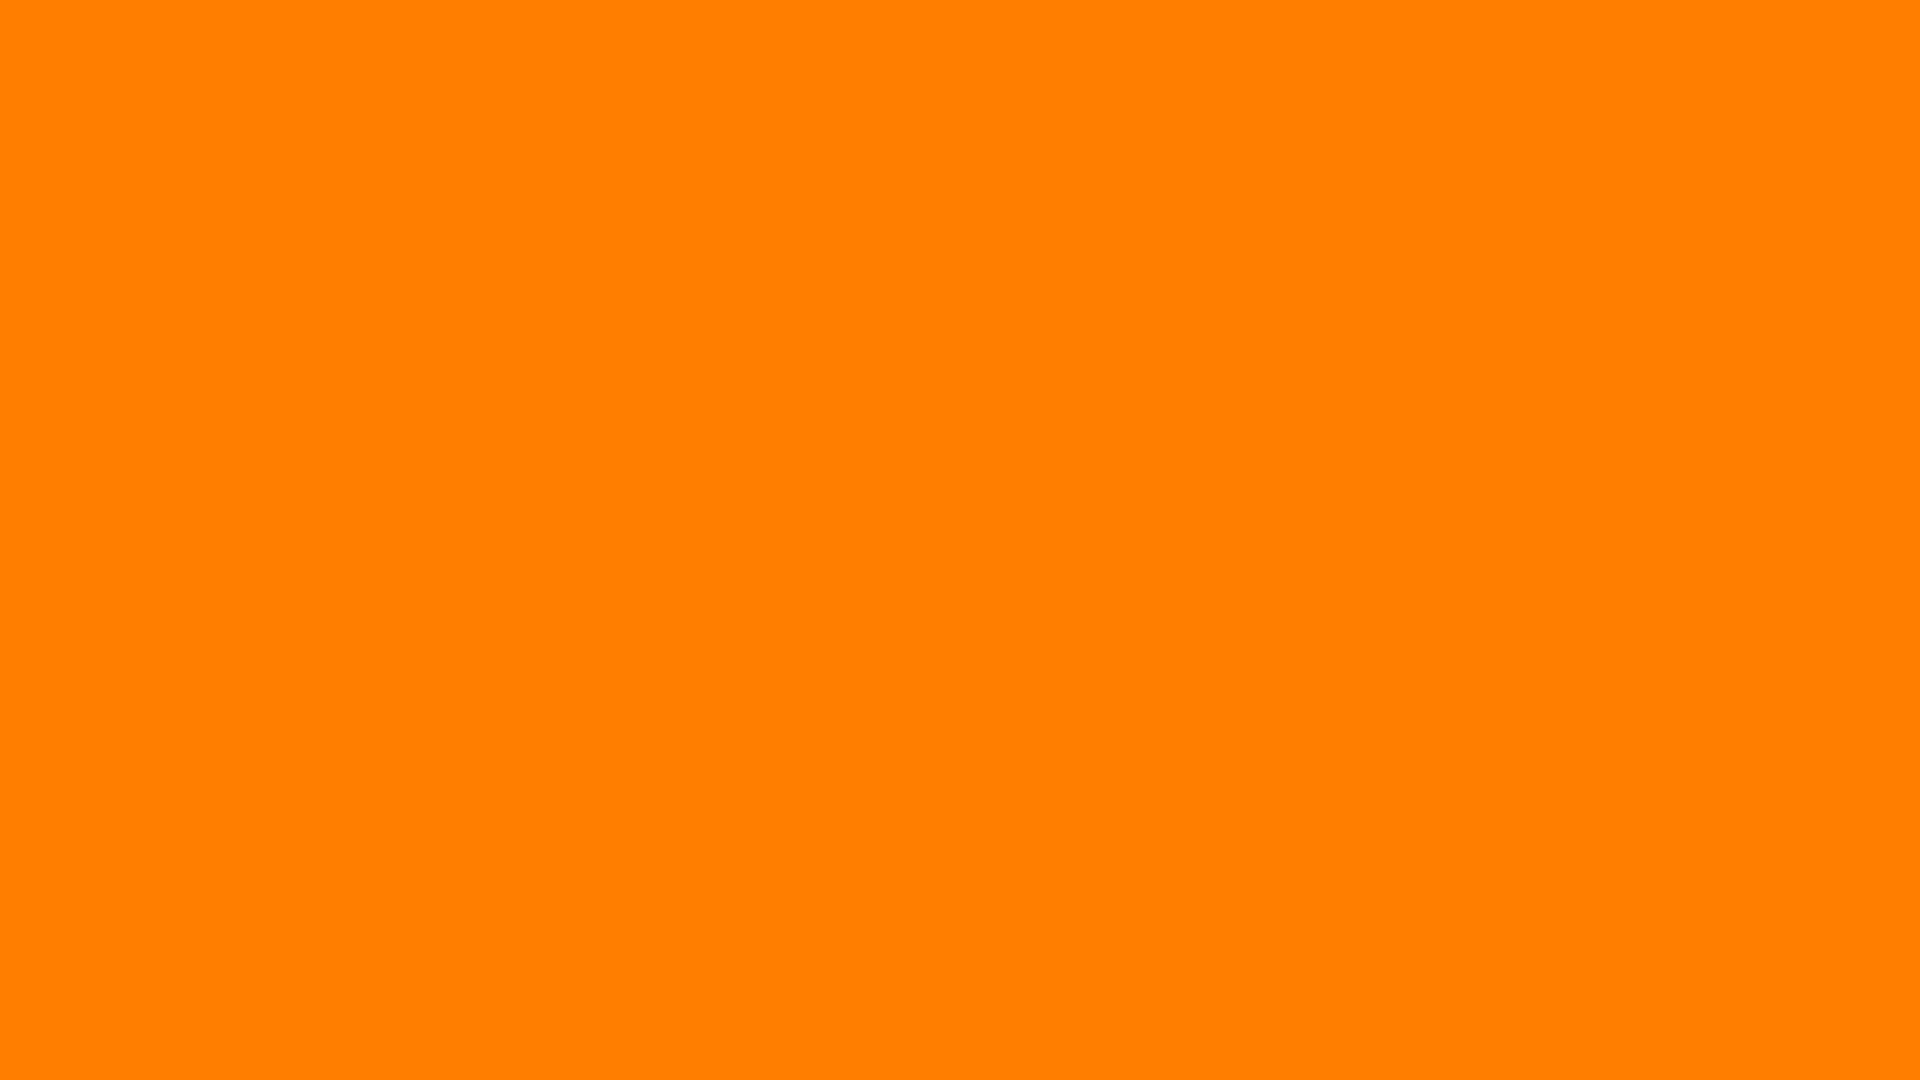 19x1080 Amber Orange Solid Color Background